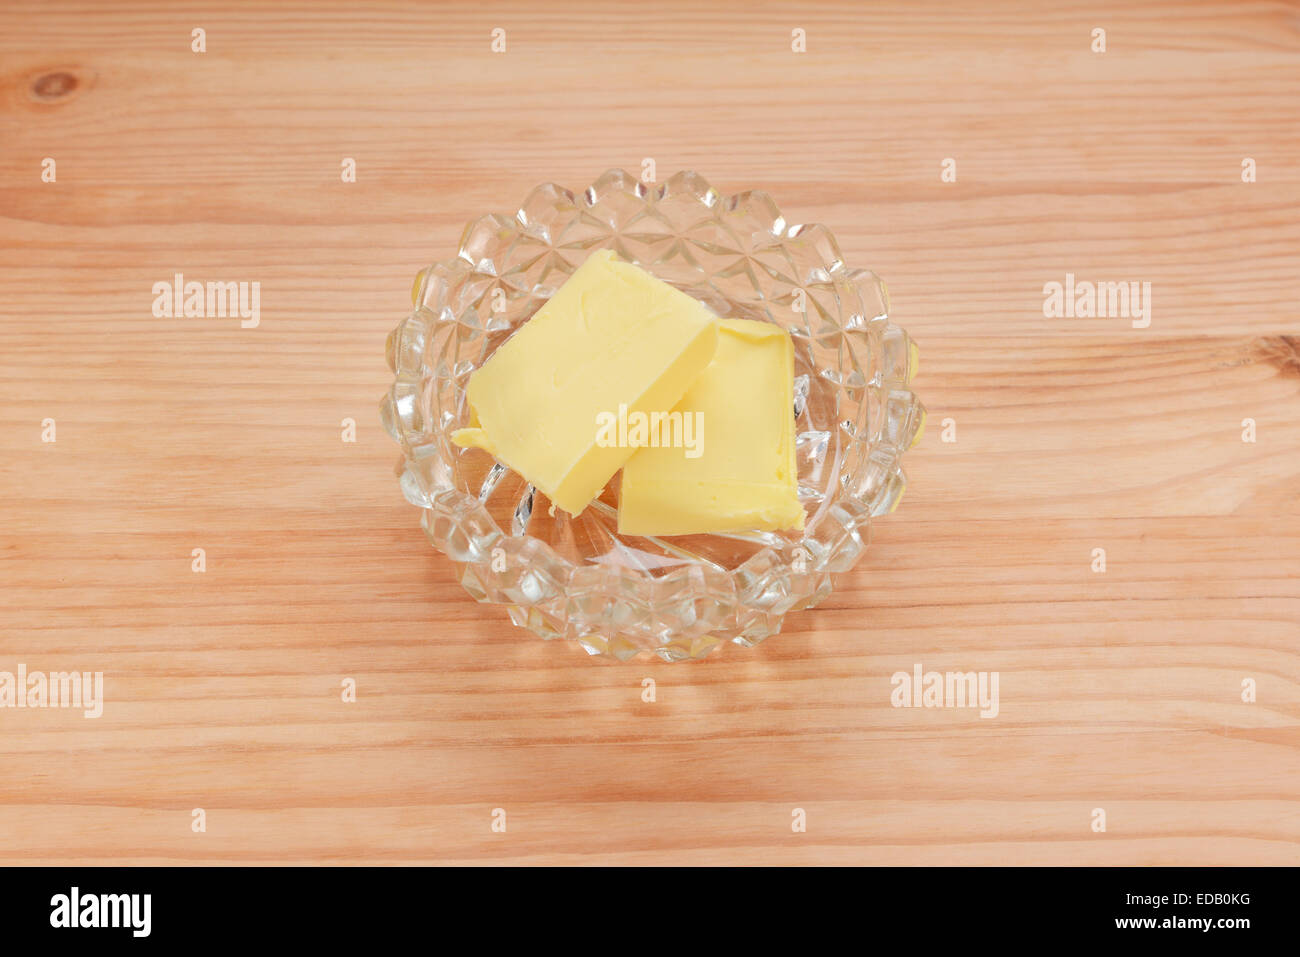 Deux pats de beurre dans un plat en verre sur une table en bois Banque D'Images